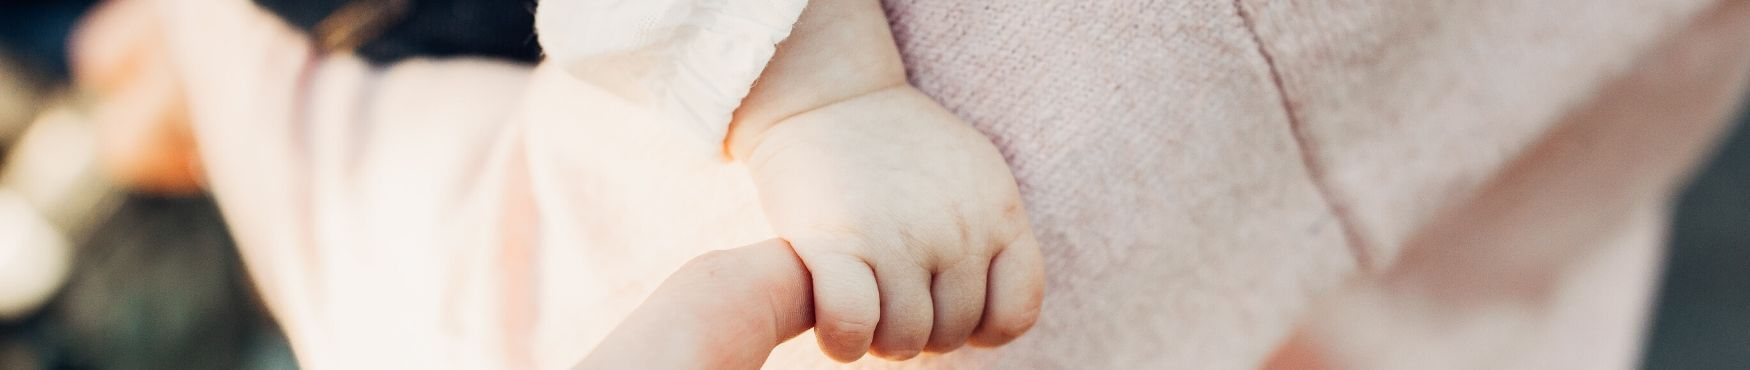 Peignoir pour bébé : notre coup de coeur des cadeaux de naissance